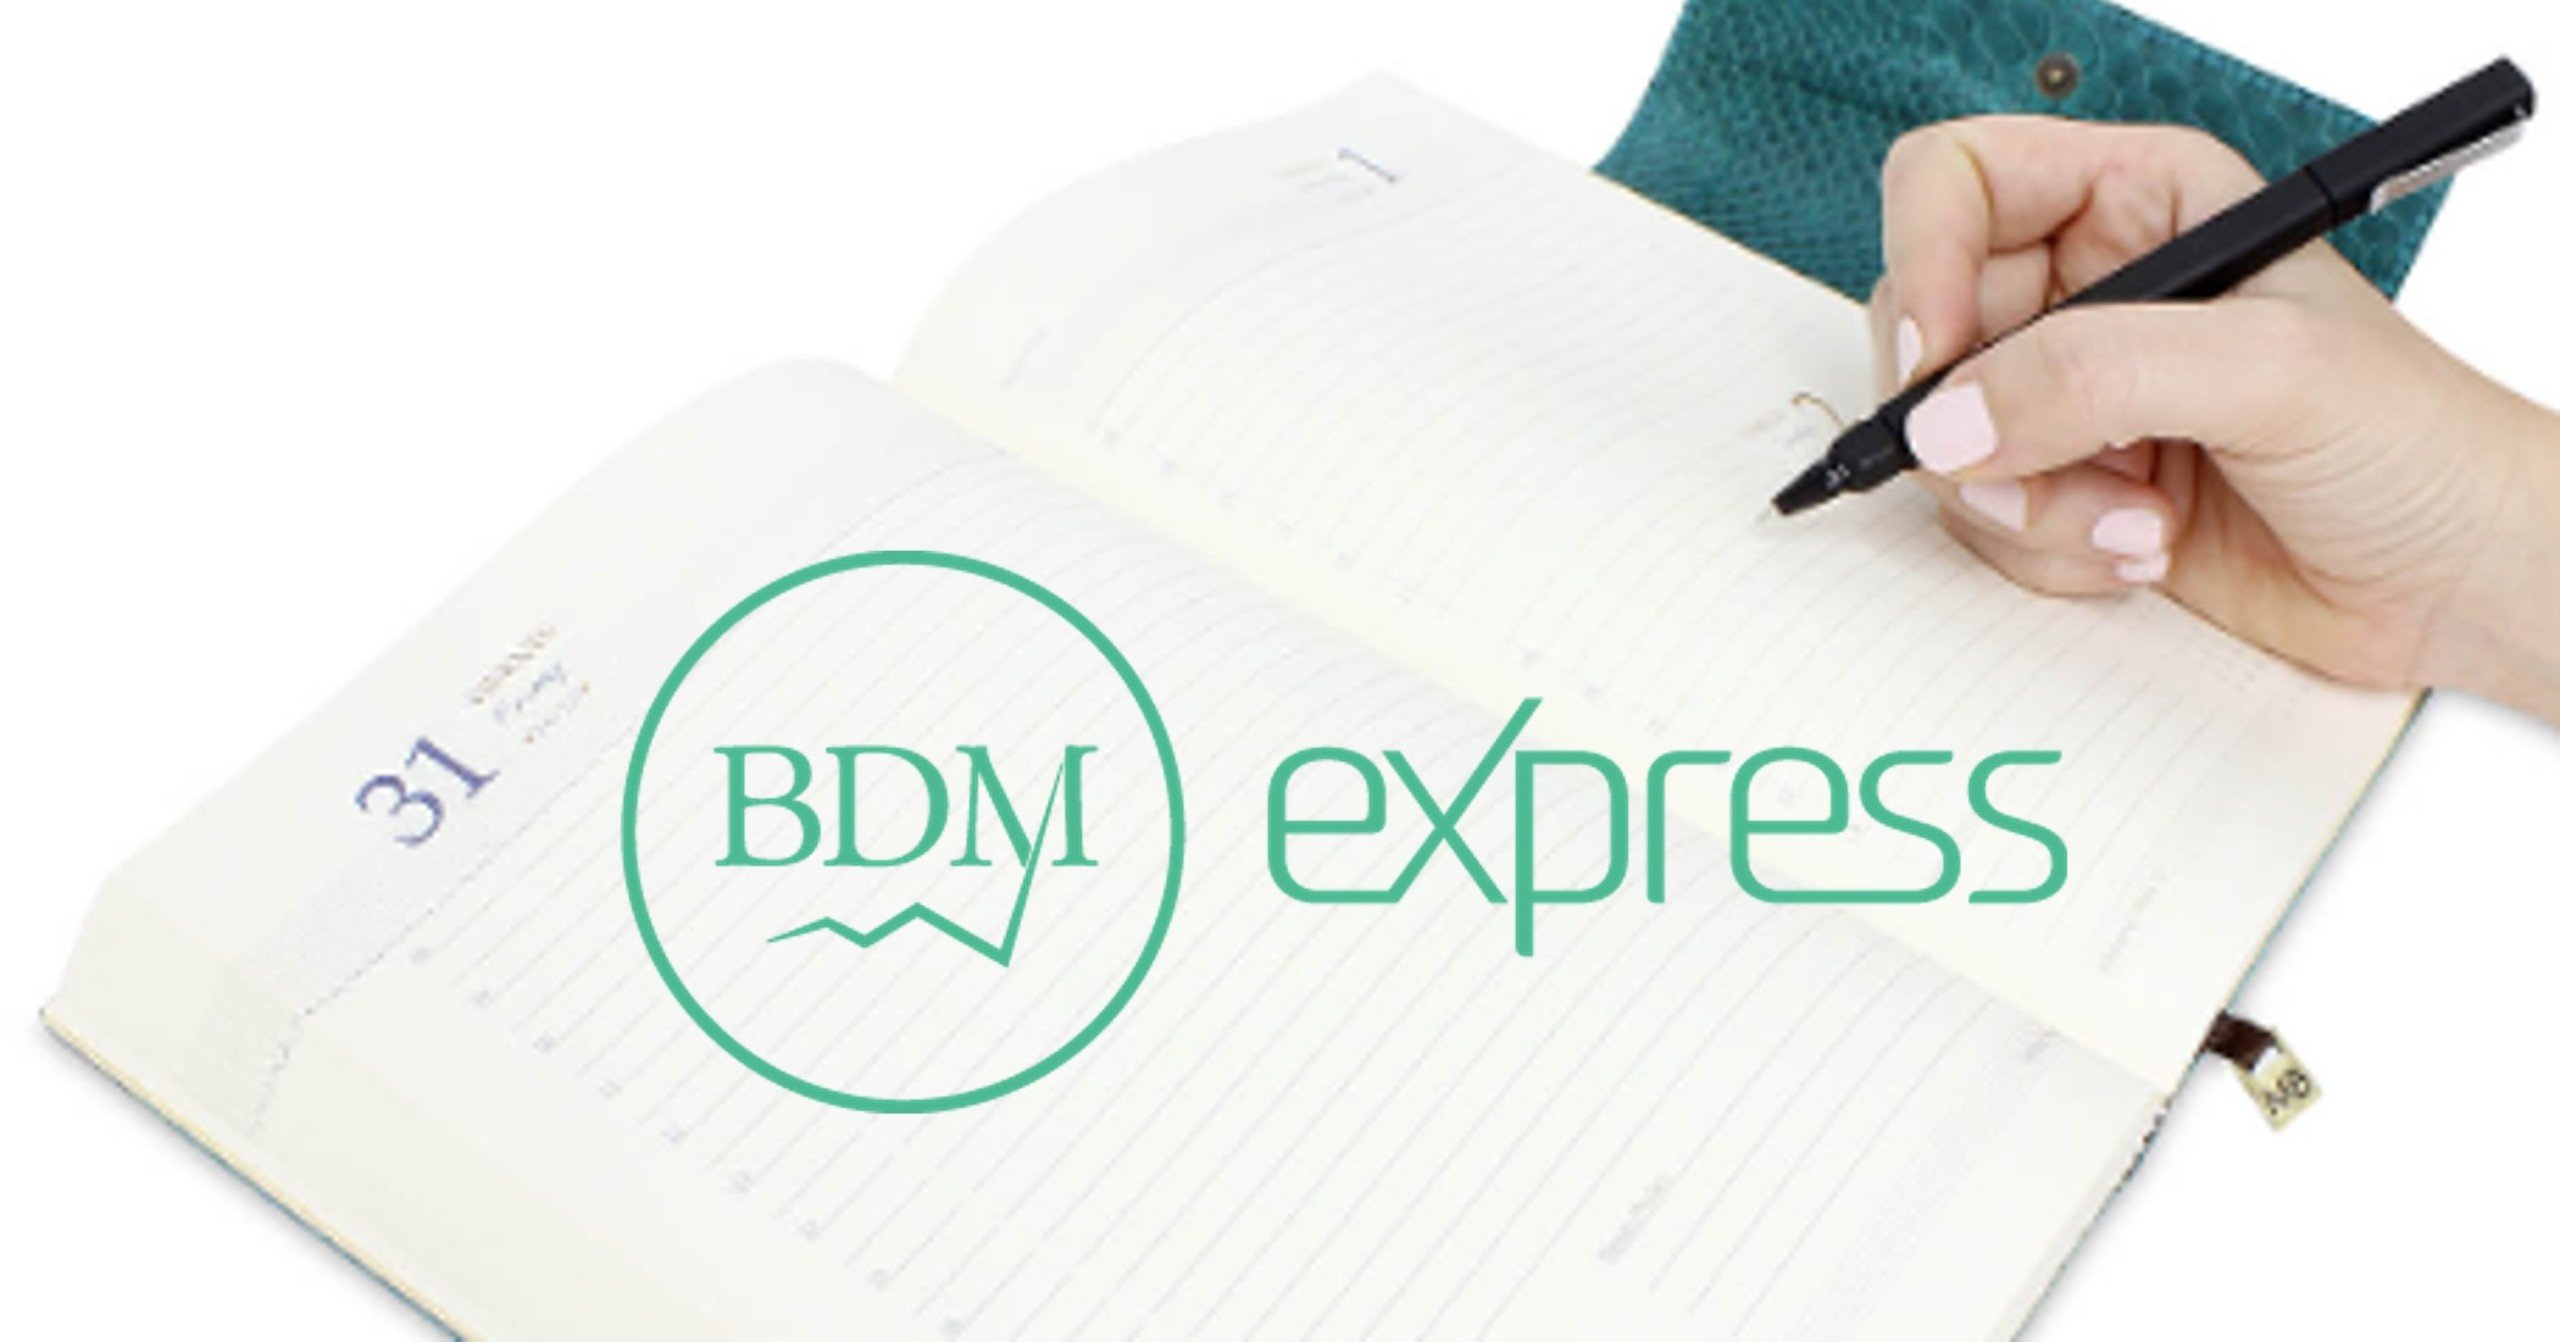 BDM Express: Caged no foco após ata citar salários